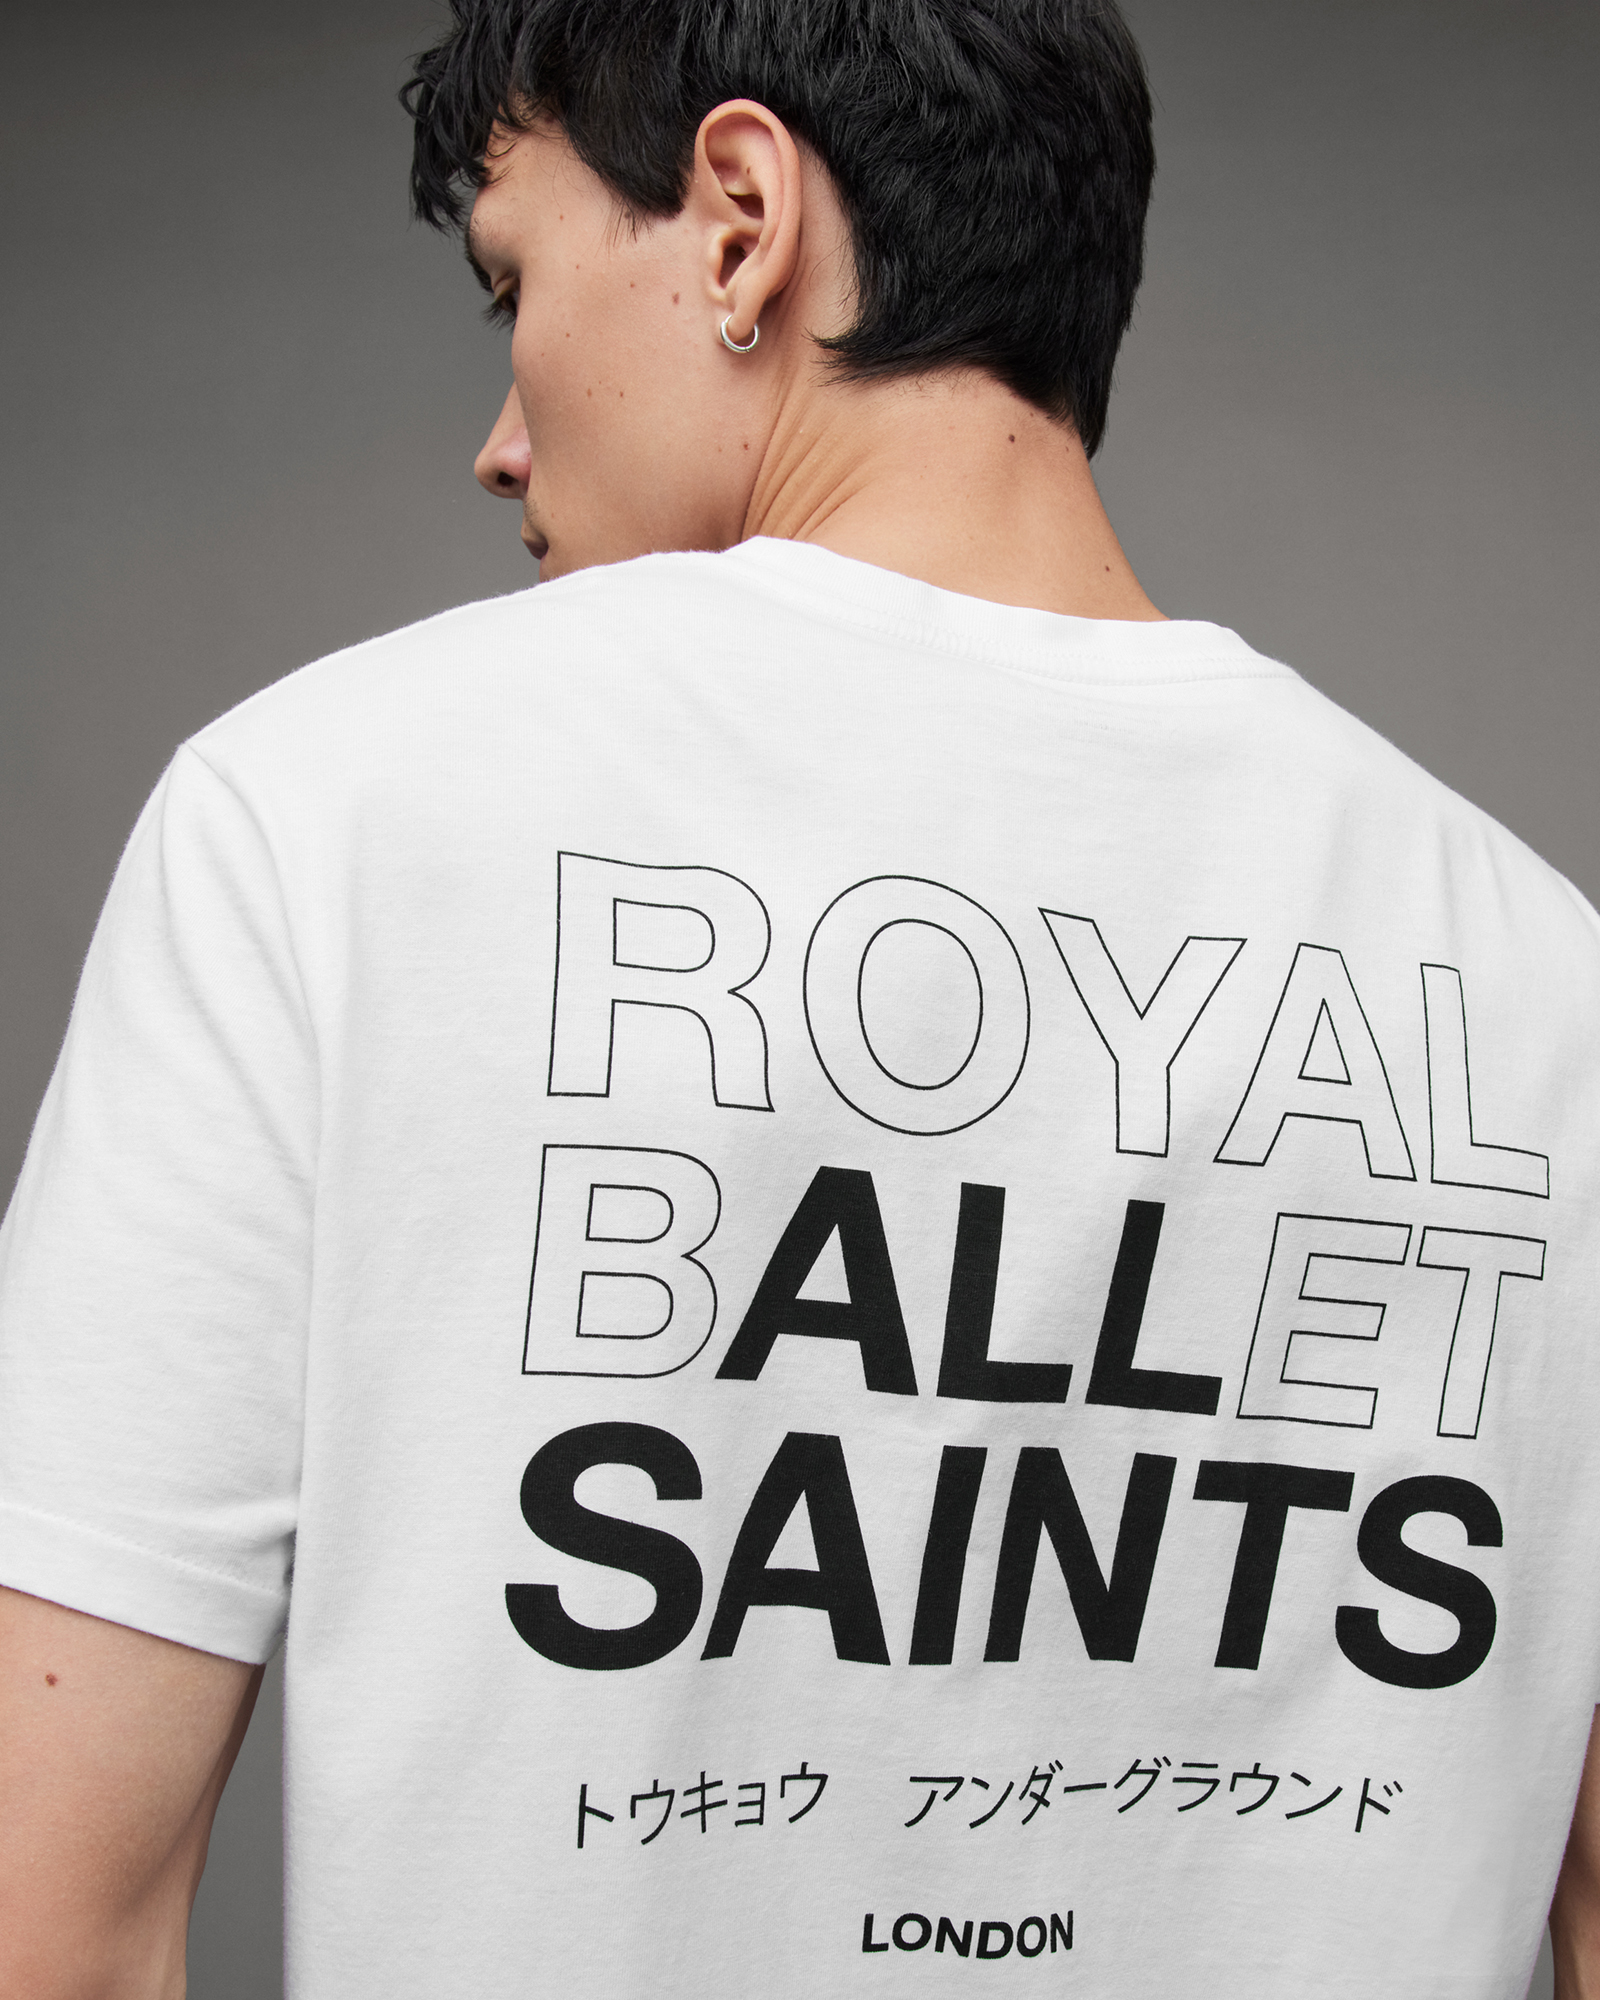 AllSaints Jete Royal Ballet Logo Charity T-Shirt